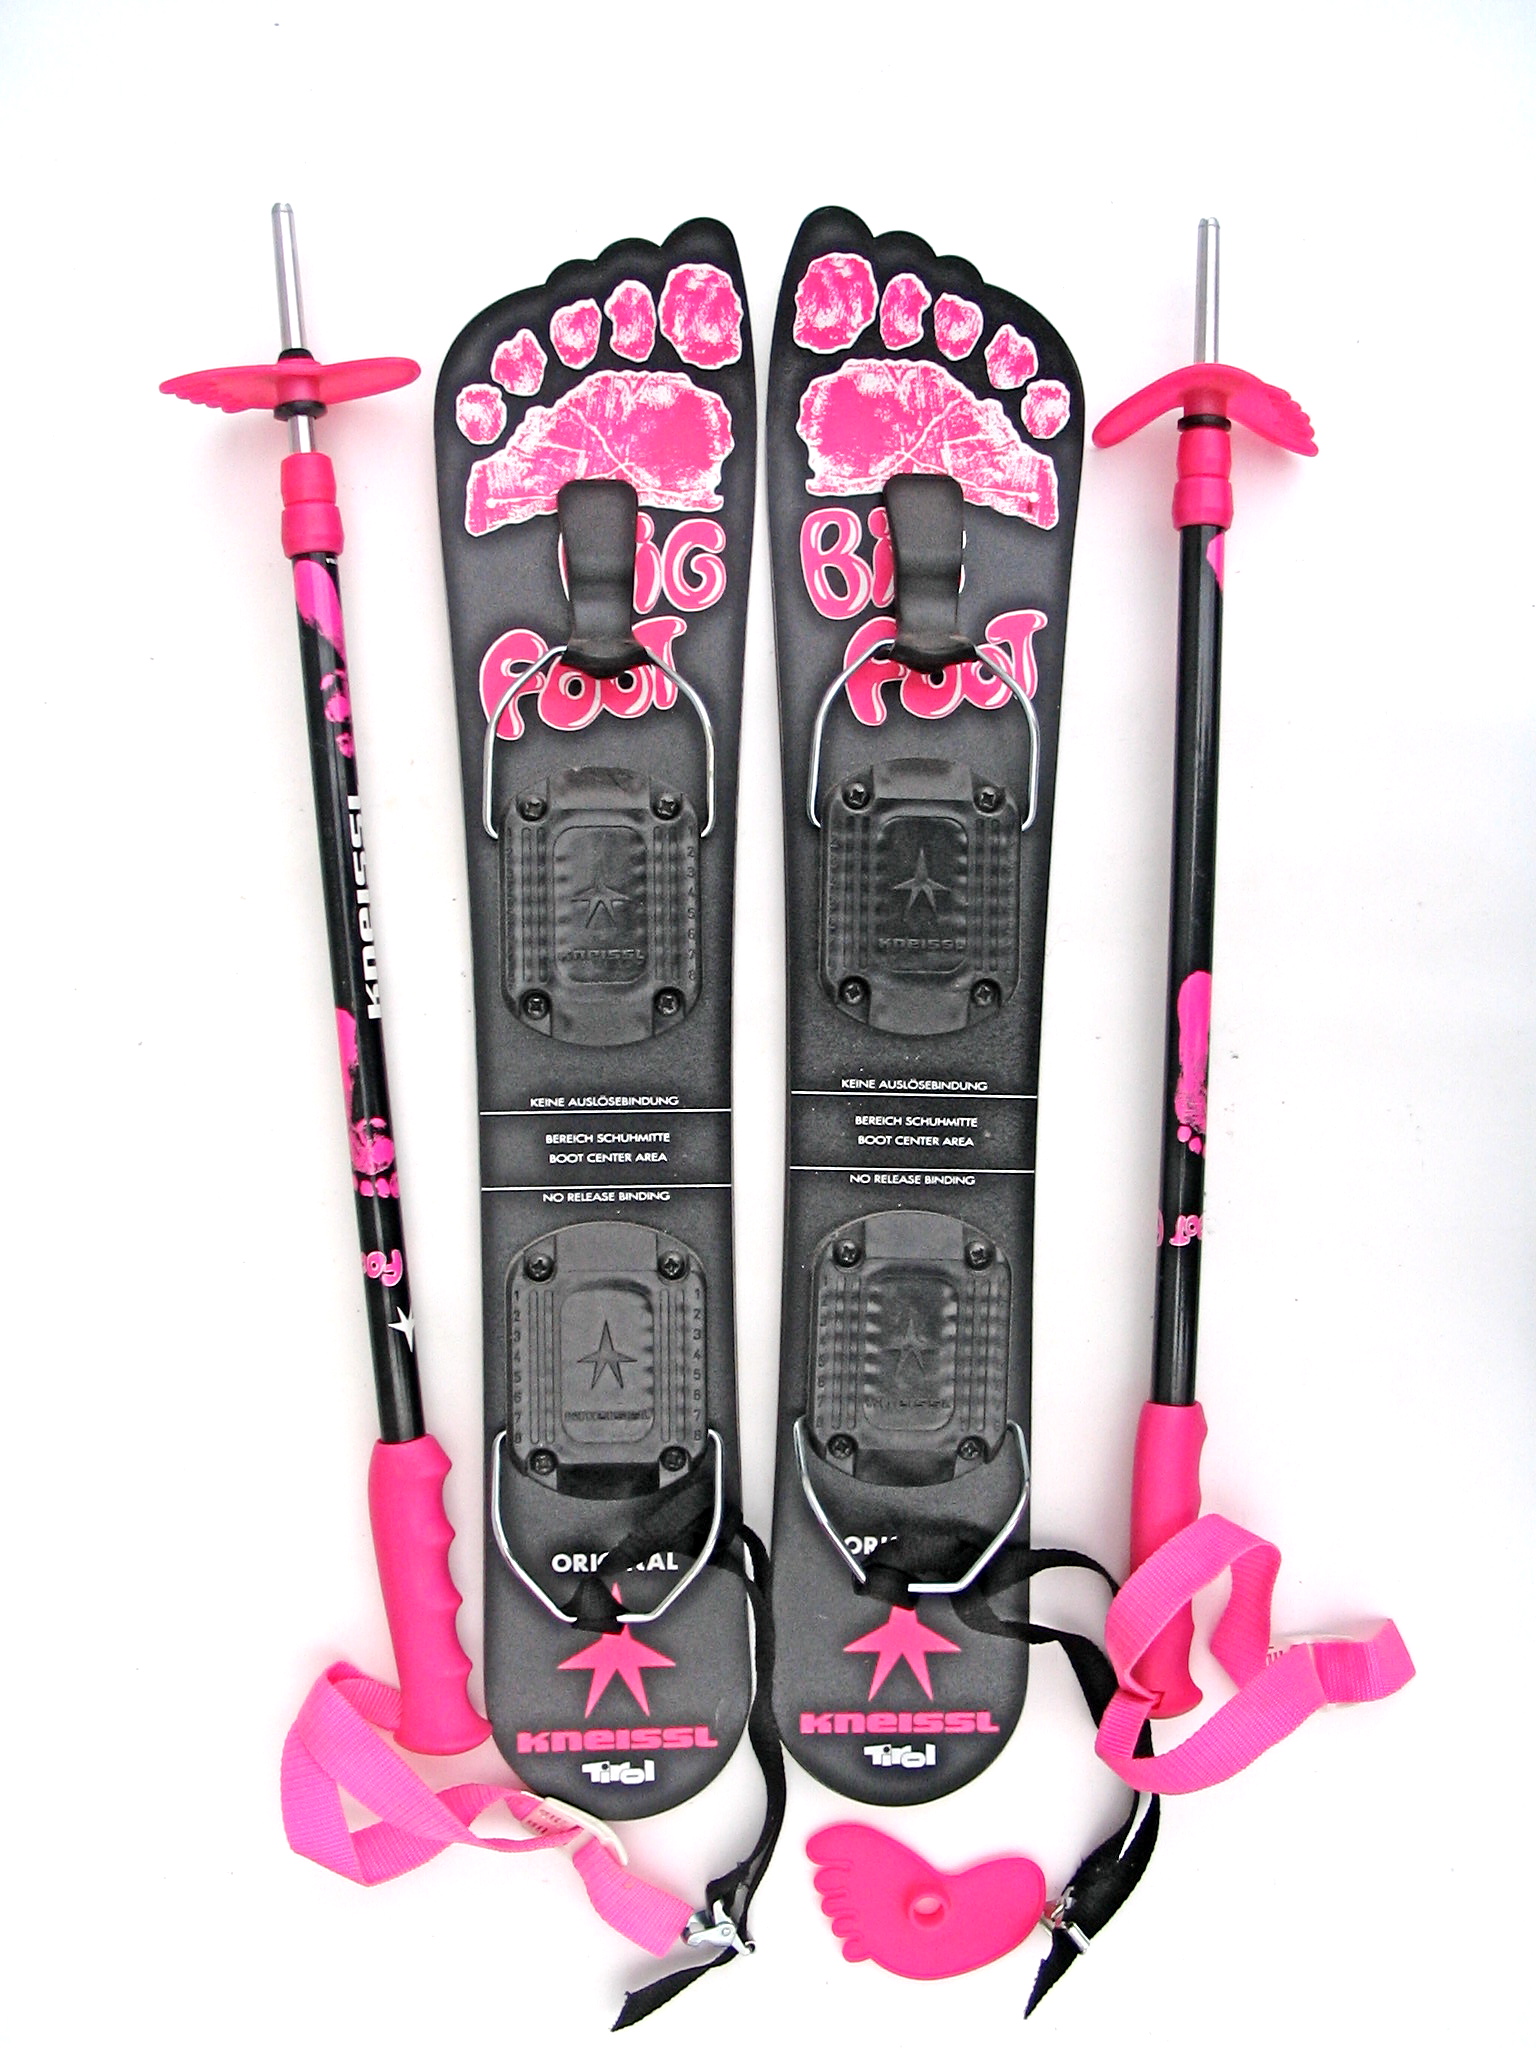 Salomon Snowblades 99 cm Skiboards USED ski boot bindings